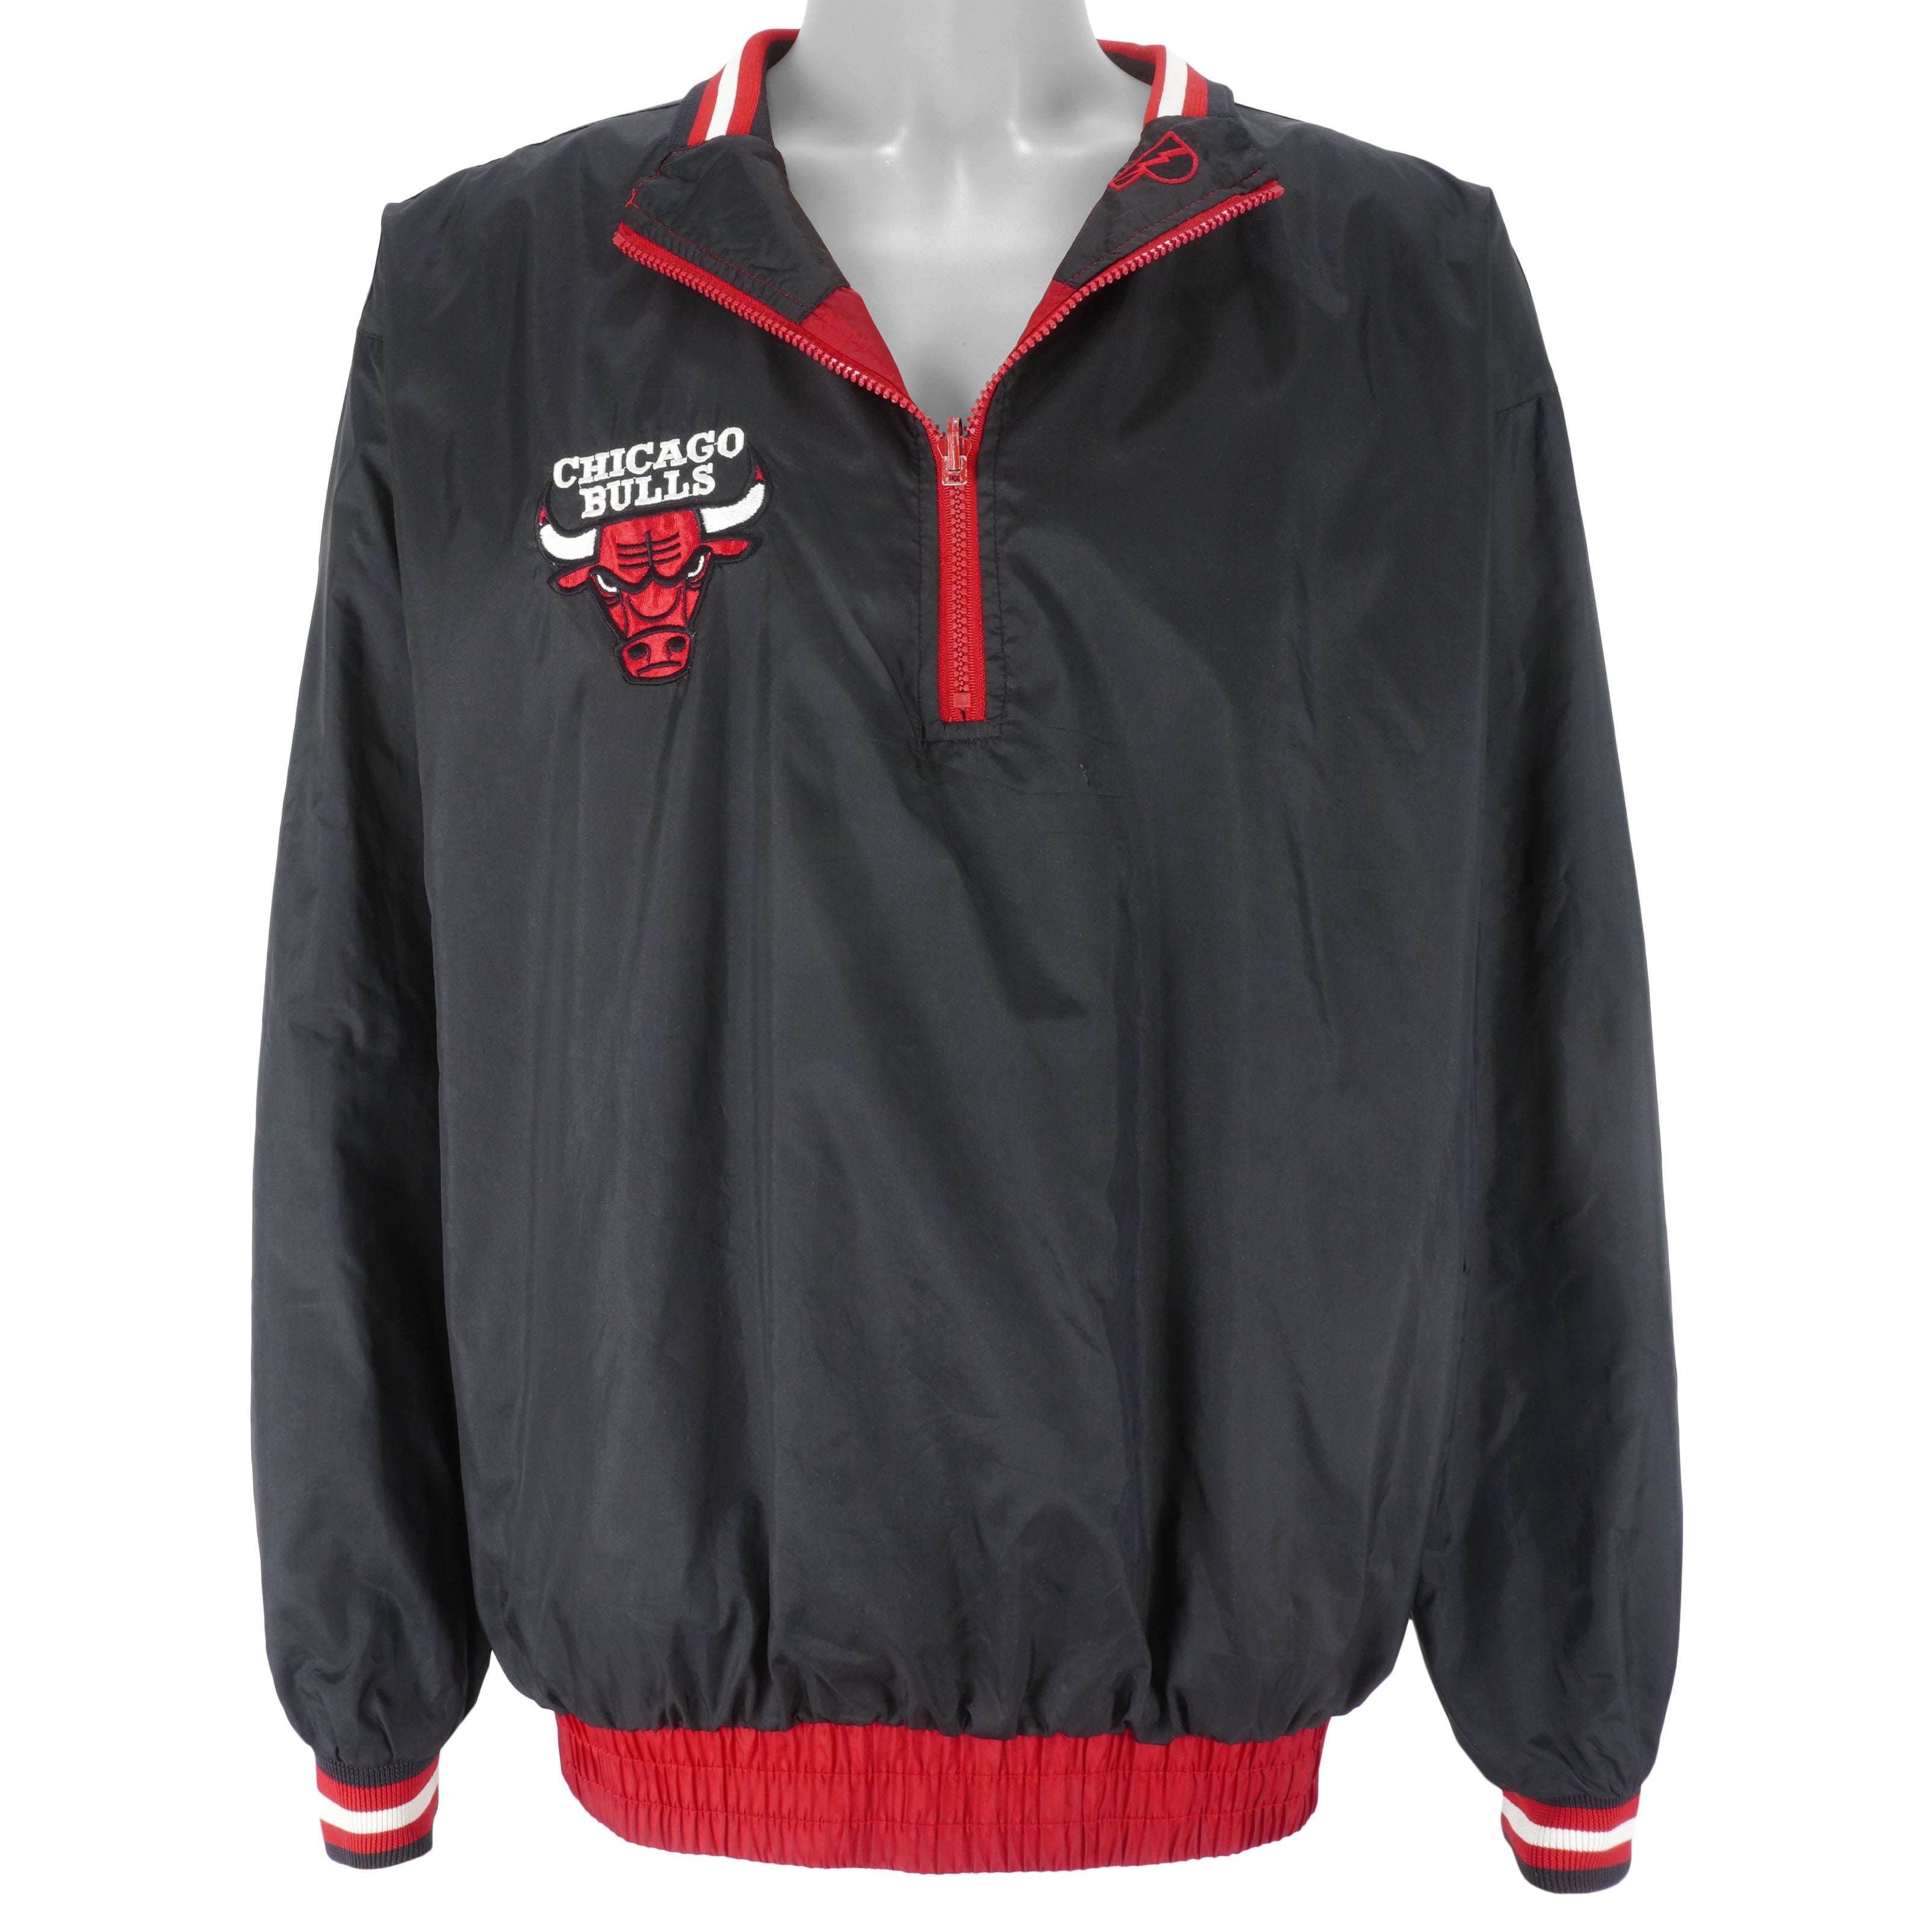 Chicago Bulls Vintage 90s Starter Reversible Basketball Jersey 